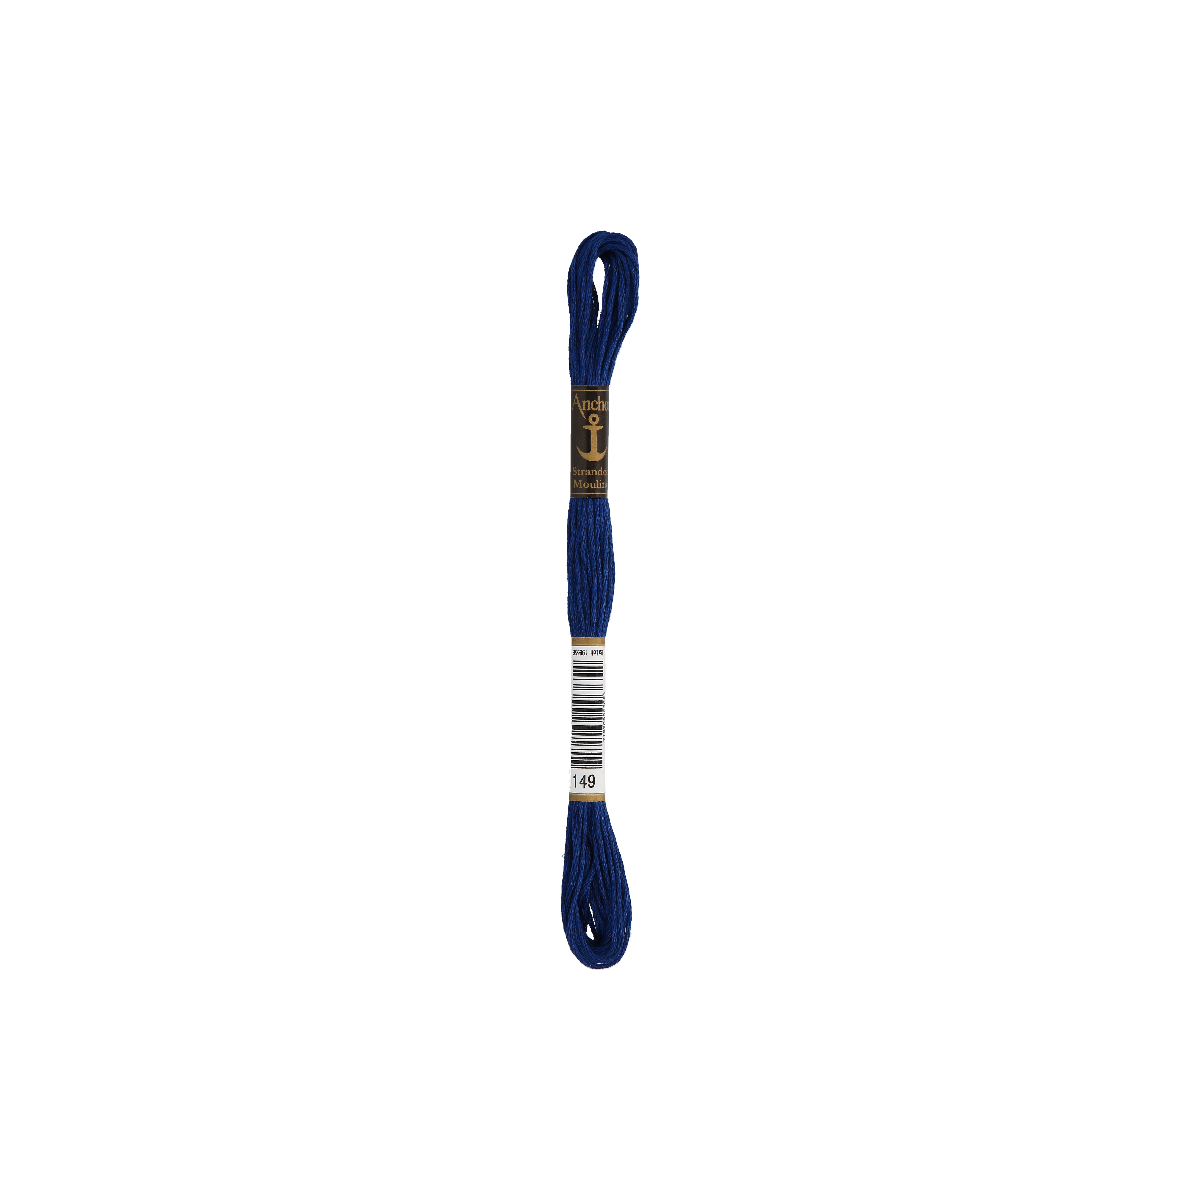 Anchor Sticktwist 8m, tintenblau, Baumwolle, Farbe 149,...